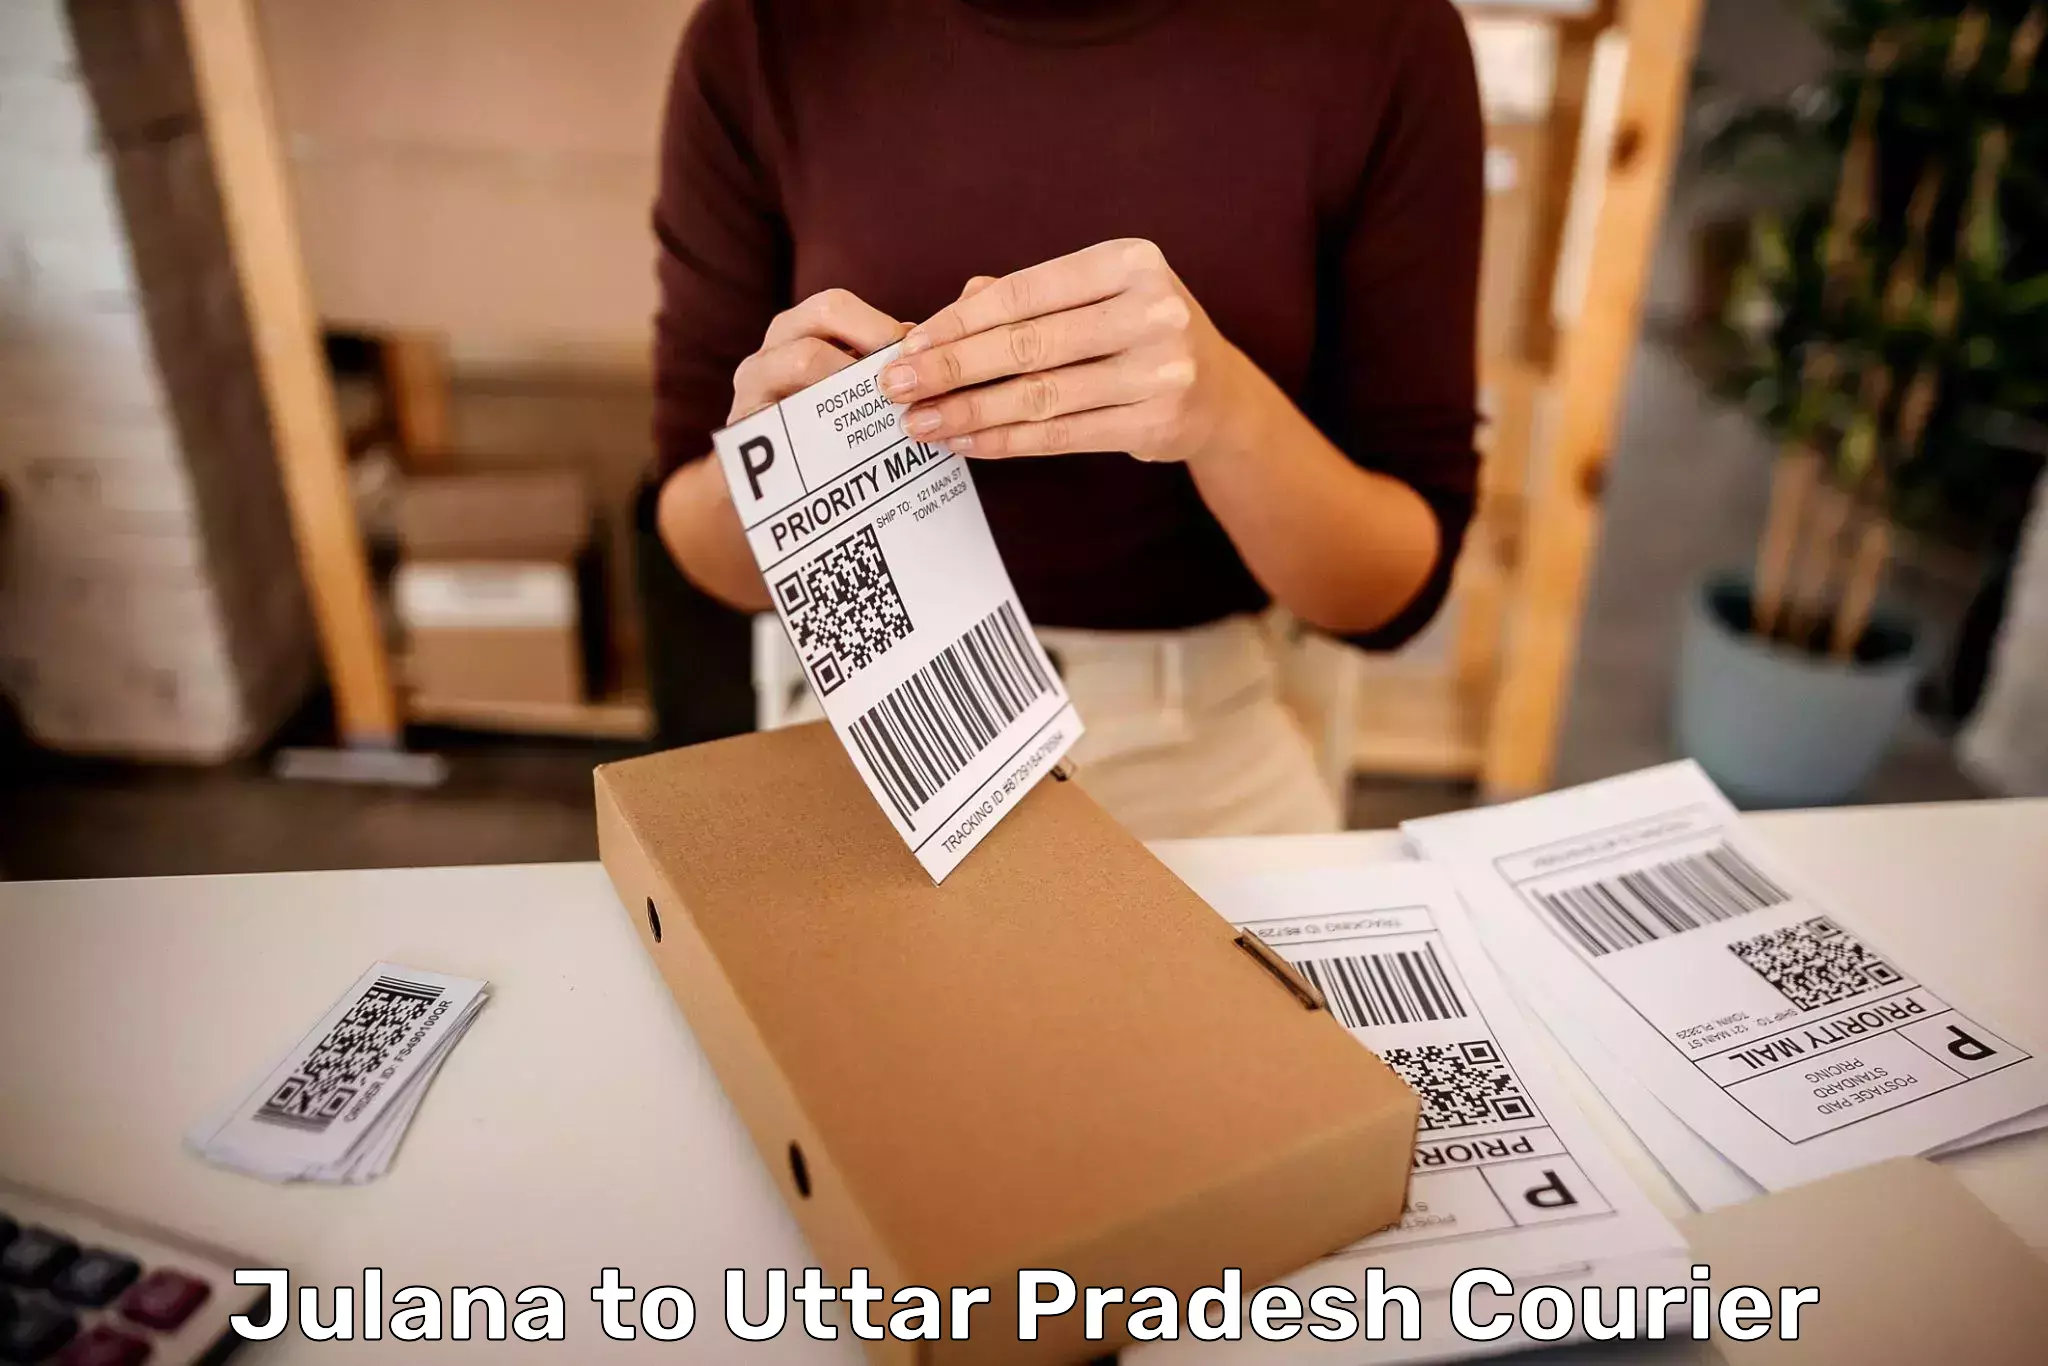 Baggage shipping experts Julana to Uttar Pradesh